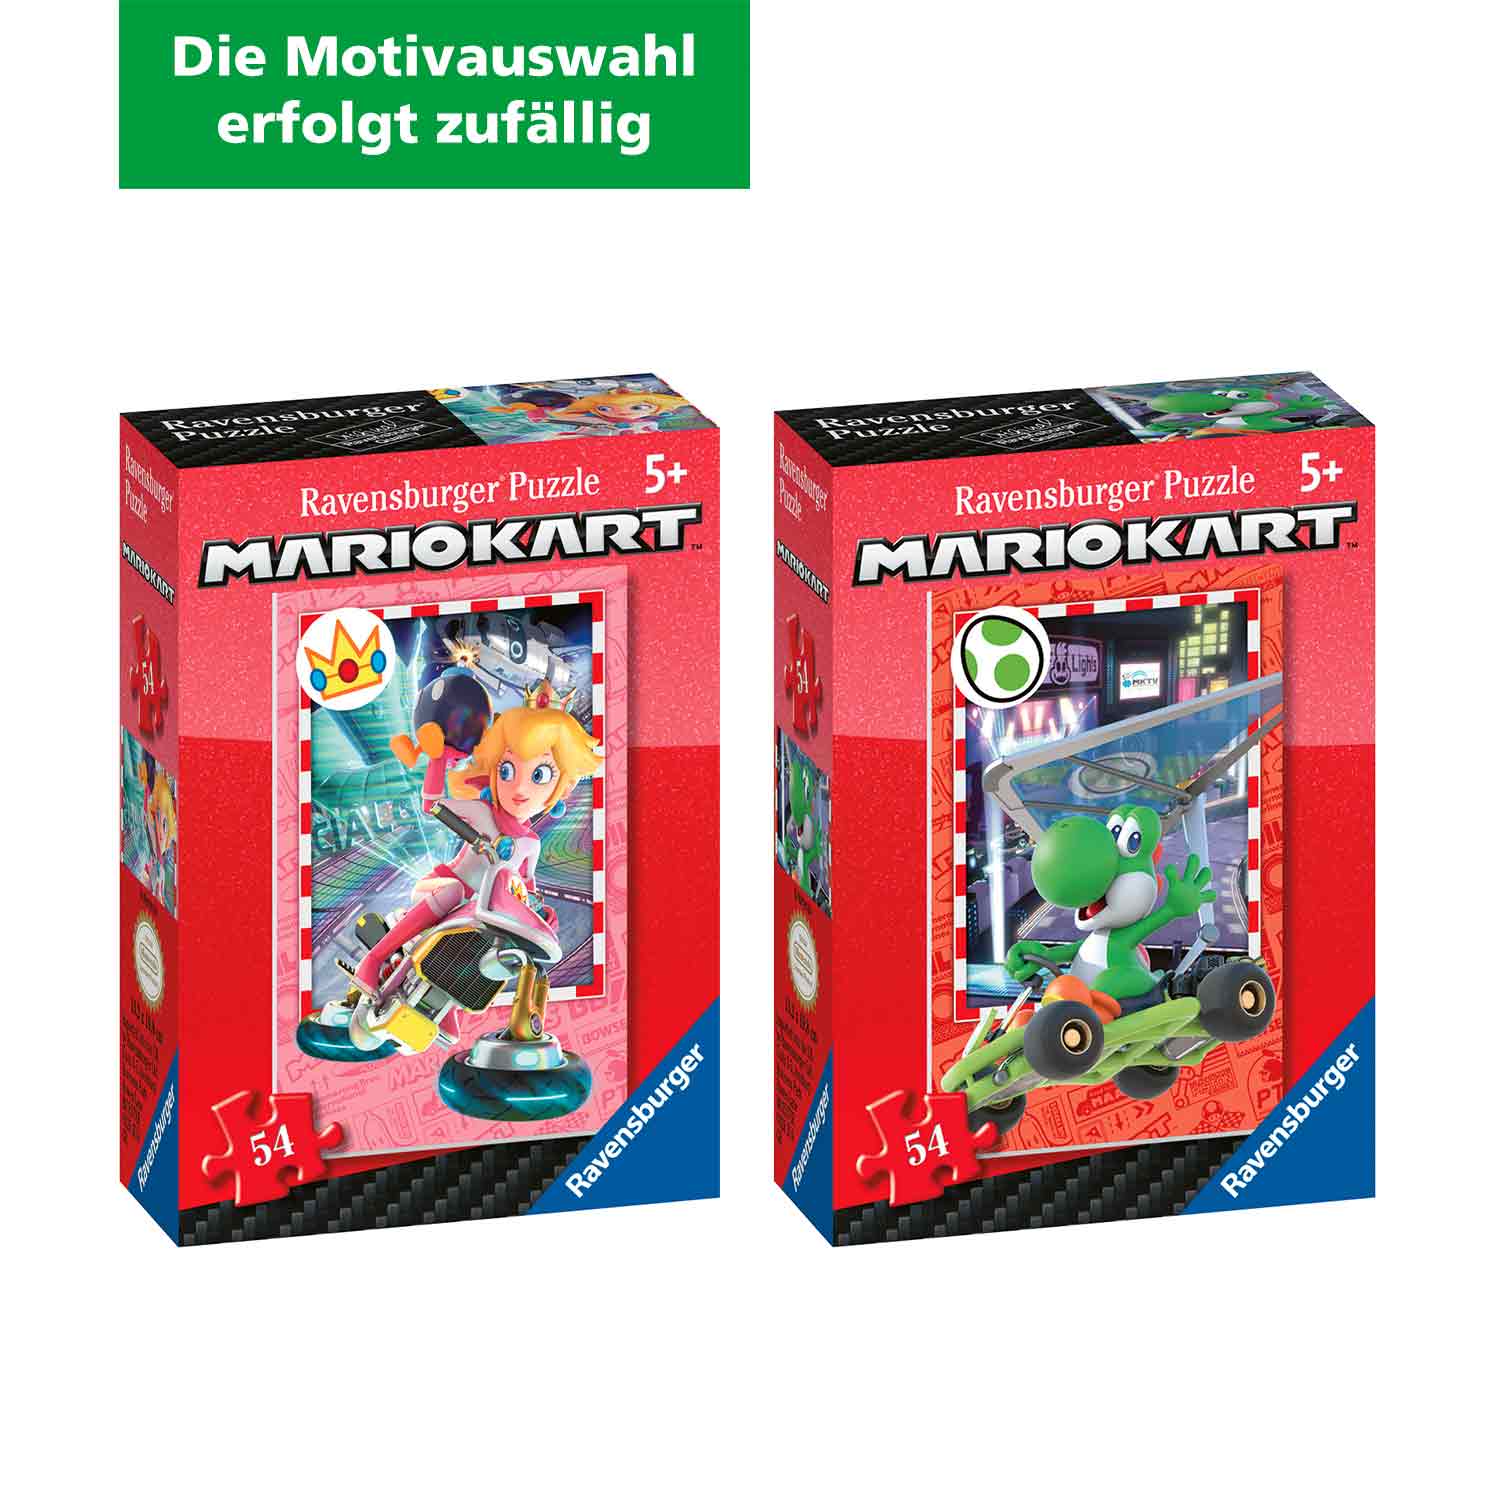 Ravensburger Mini-Puzzle Super Mario 54 Teile (Motivauswahl erfolgt zufällig) 